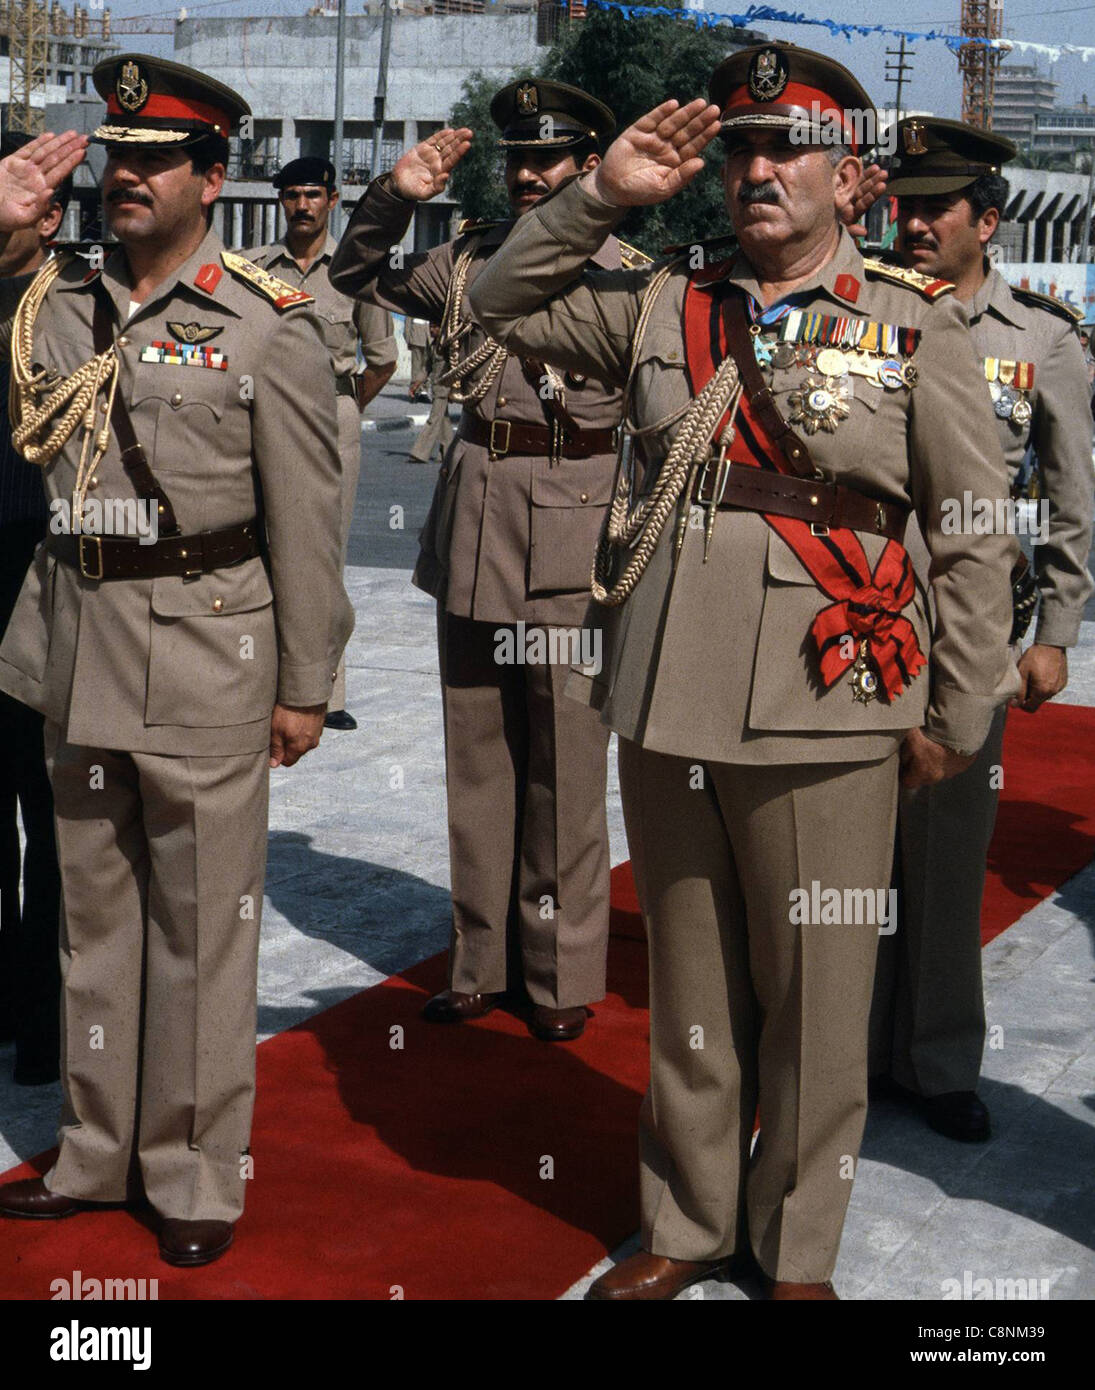 Le général Adnan Khairallah, à gauche, était le beau-frère de Saddam Hussein. Il est vu ici saluant le monument du Soldat inconnu de Bagdad avec d'autres hommes militaires de haut niveau, 1981 Banque D'Images